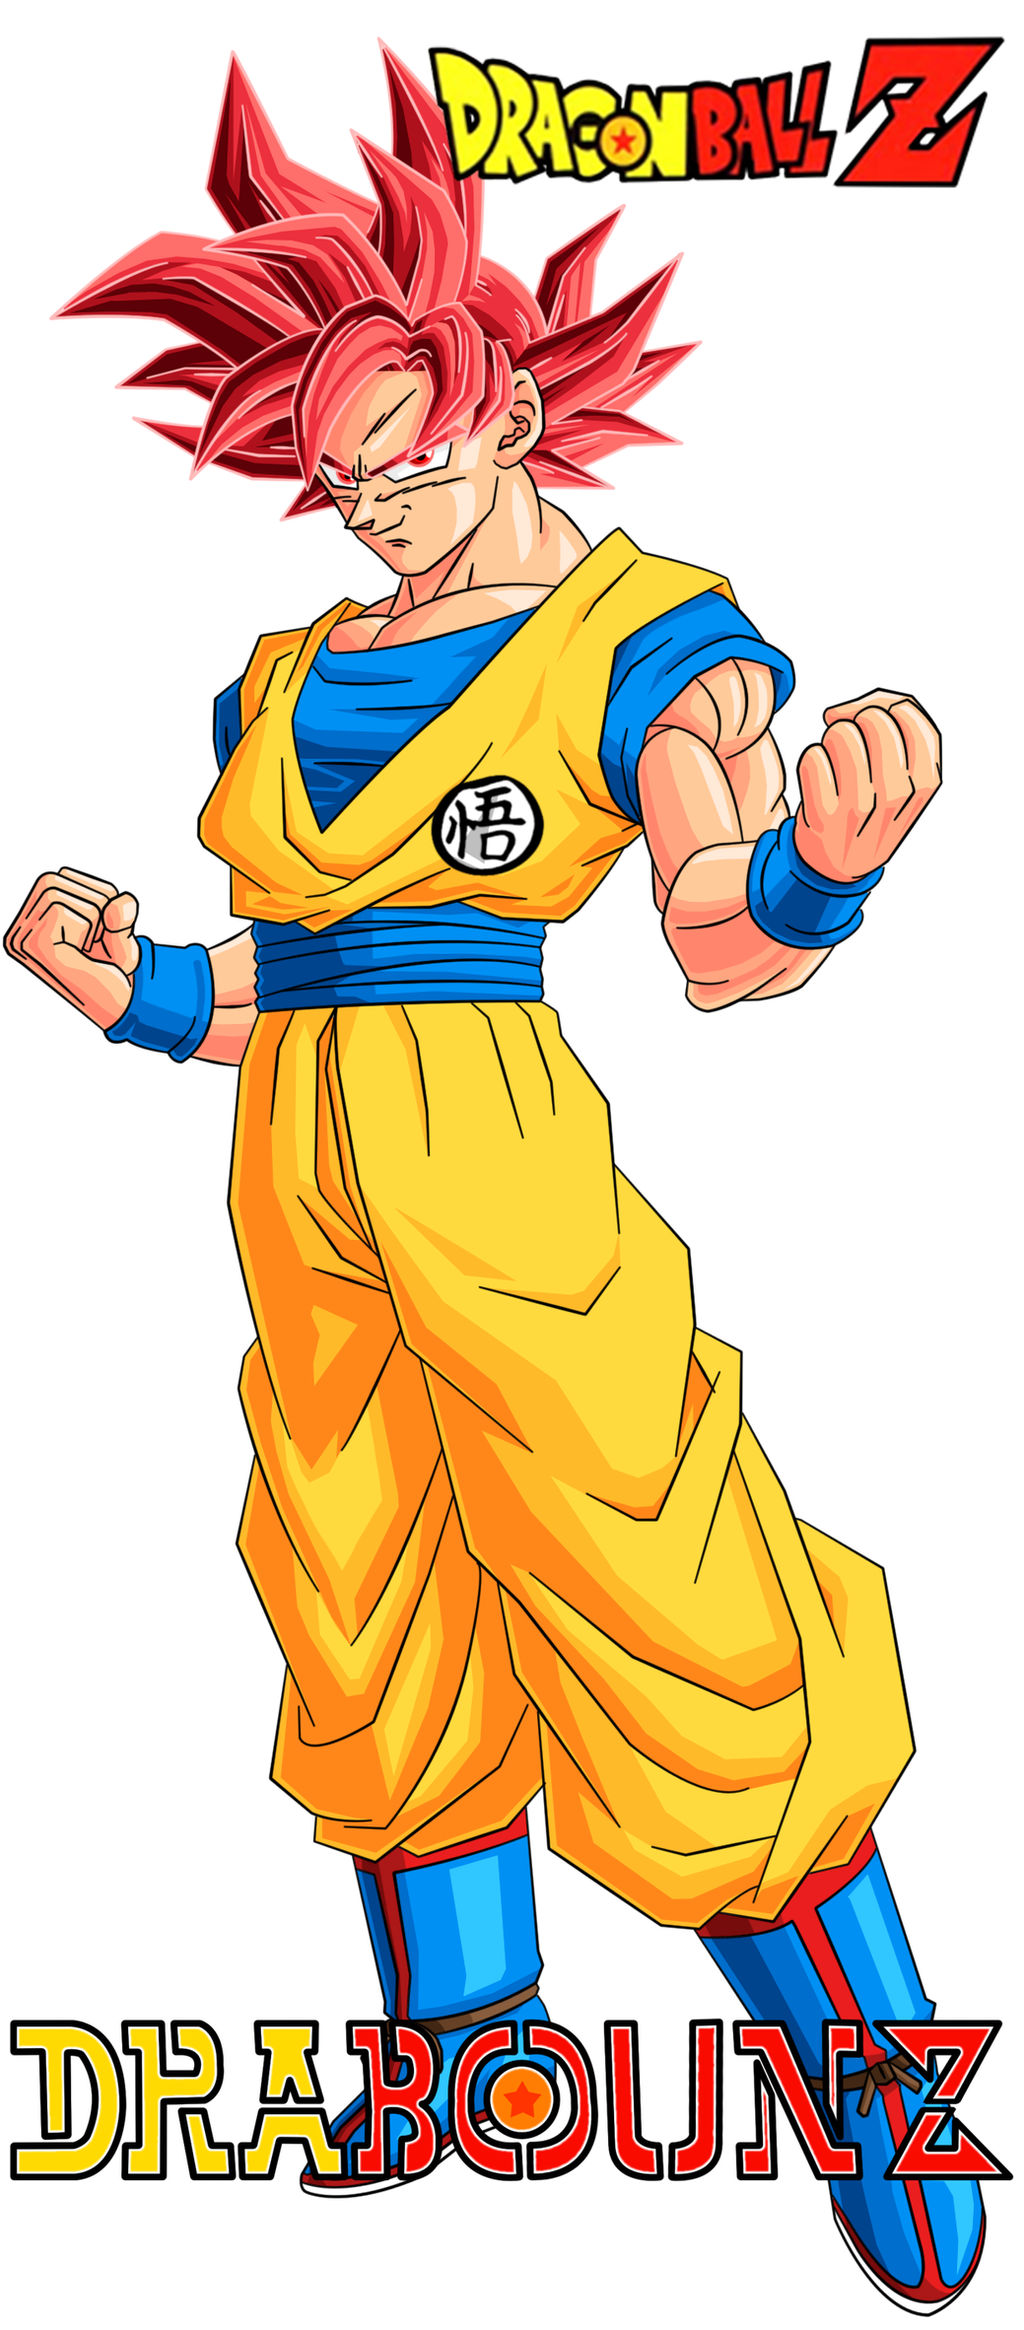 Goku ssj God finished #goku #gokussjgod #ssj #dragonballz